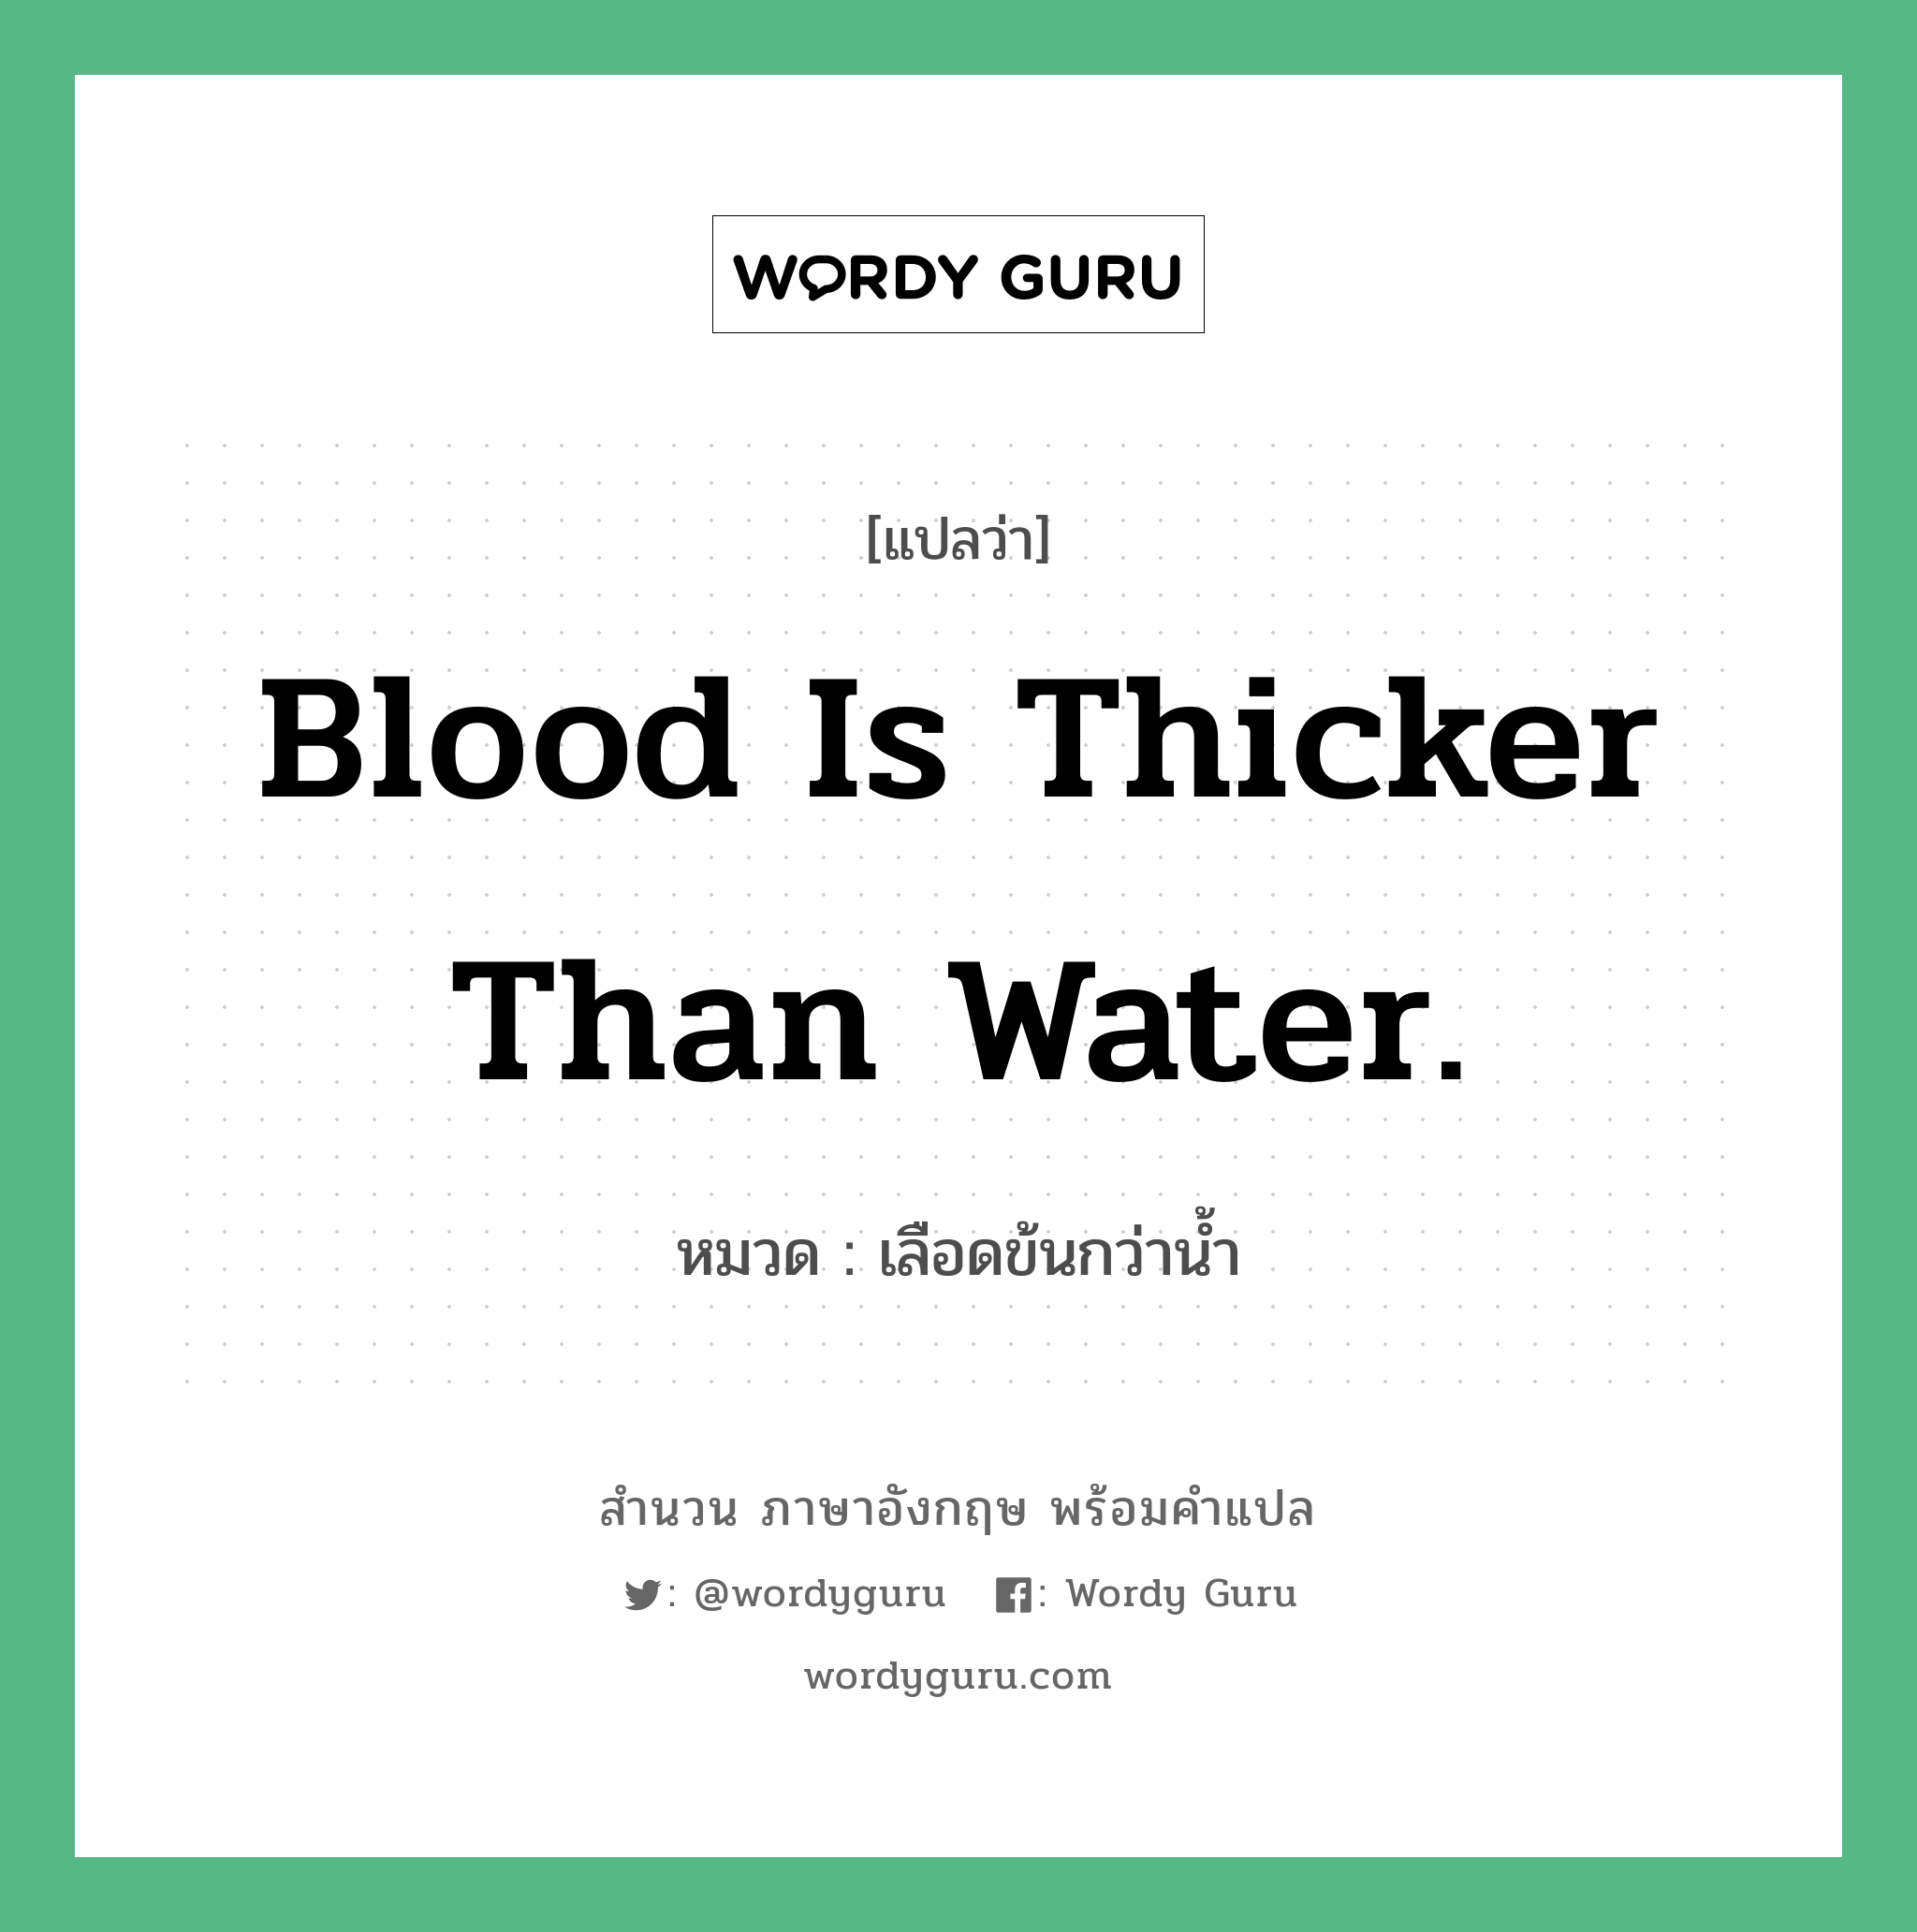 เลือดข้นกว่าน้ำ ภาษาอังกฤษ?, สำนวนภาษาอังกฤษ เลือดข้นกว่าน้ำ แปลว่า เลือดข้นกว่าน้ำ หมวด Blood is thicker than water. คำสุภาษิต ภาษาอังกฤษ หมวด คำสุภาษิต ภาษาอังกฤษ